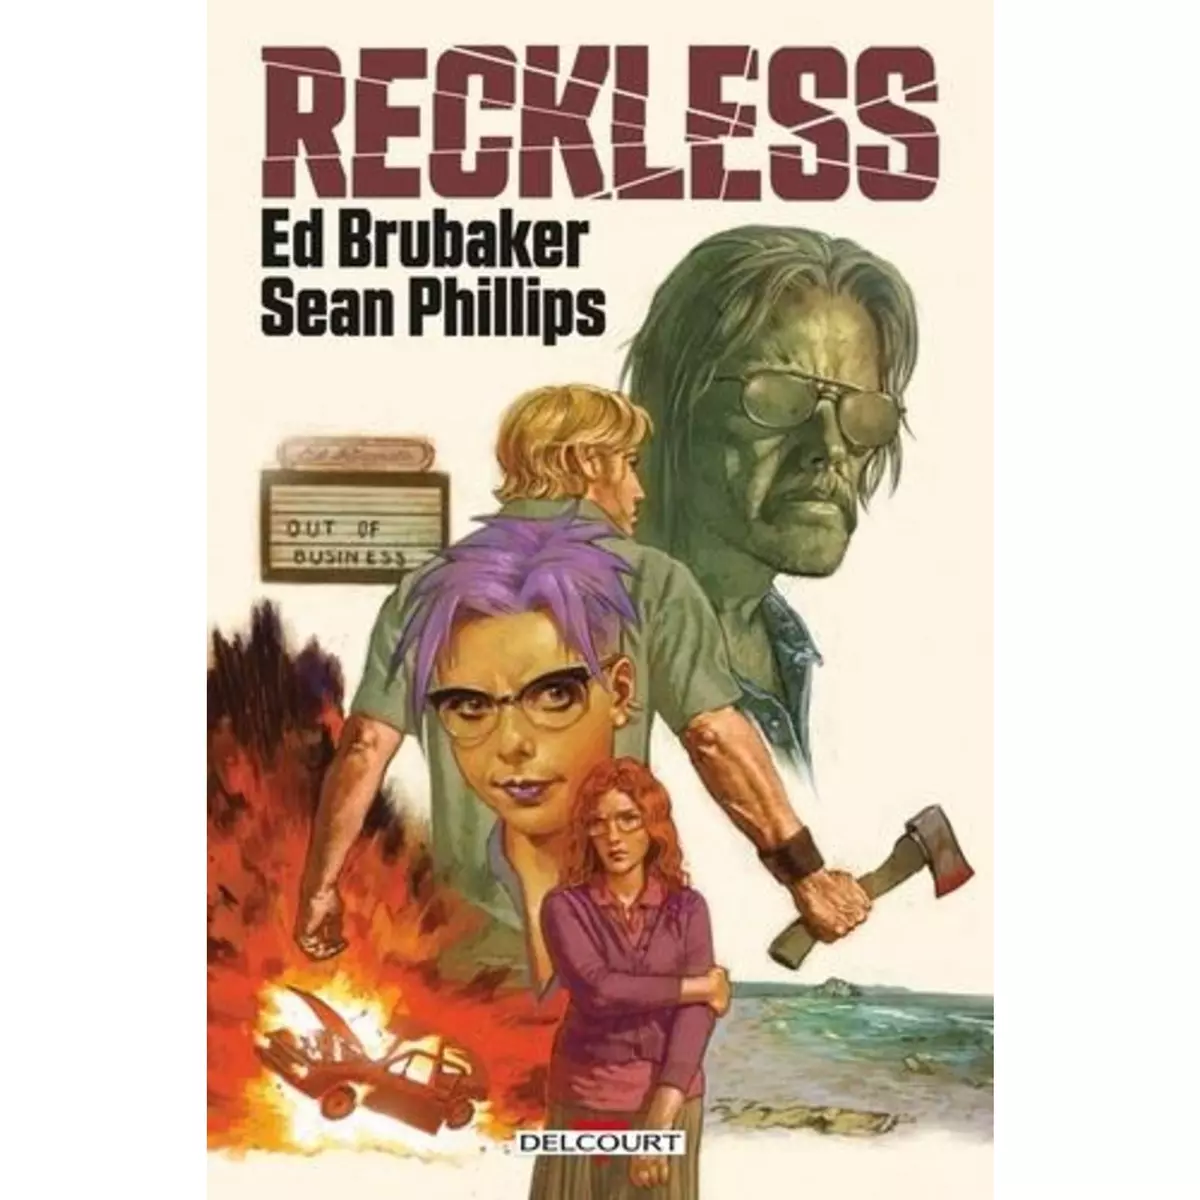  RECKLESS , Brubaker Ed